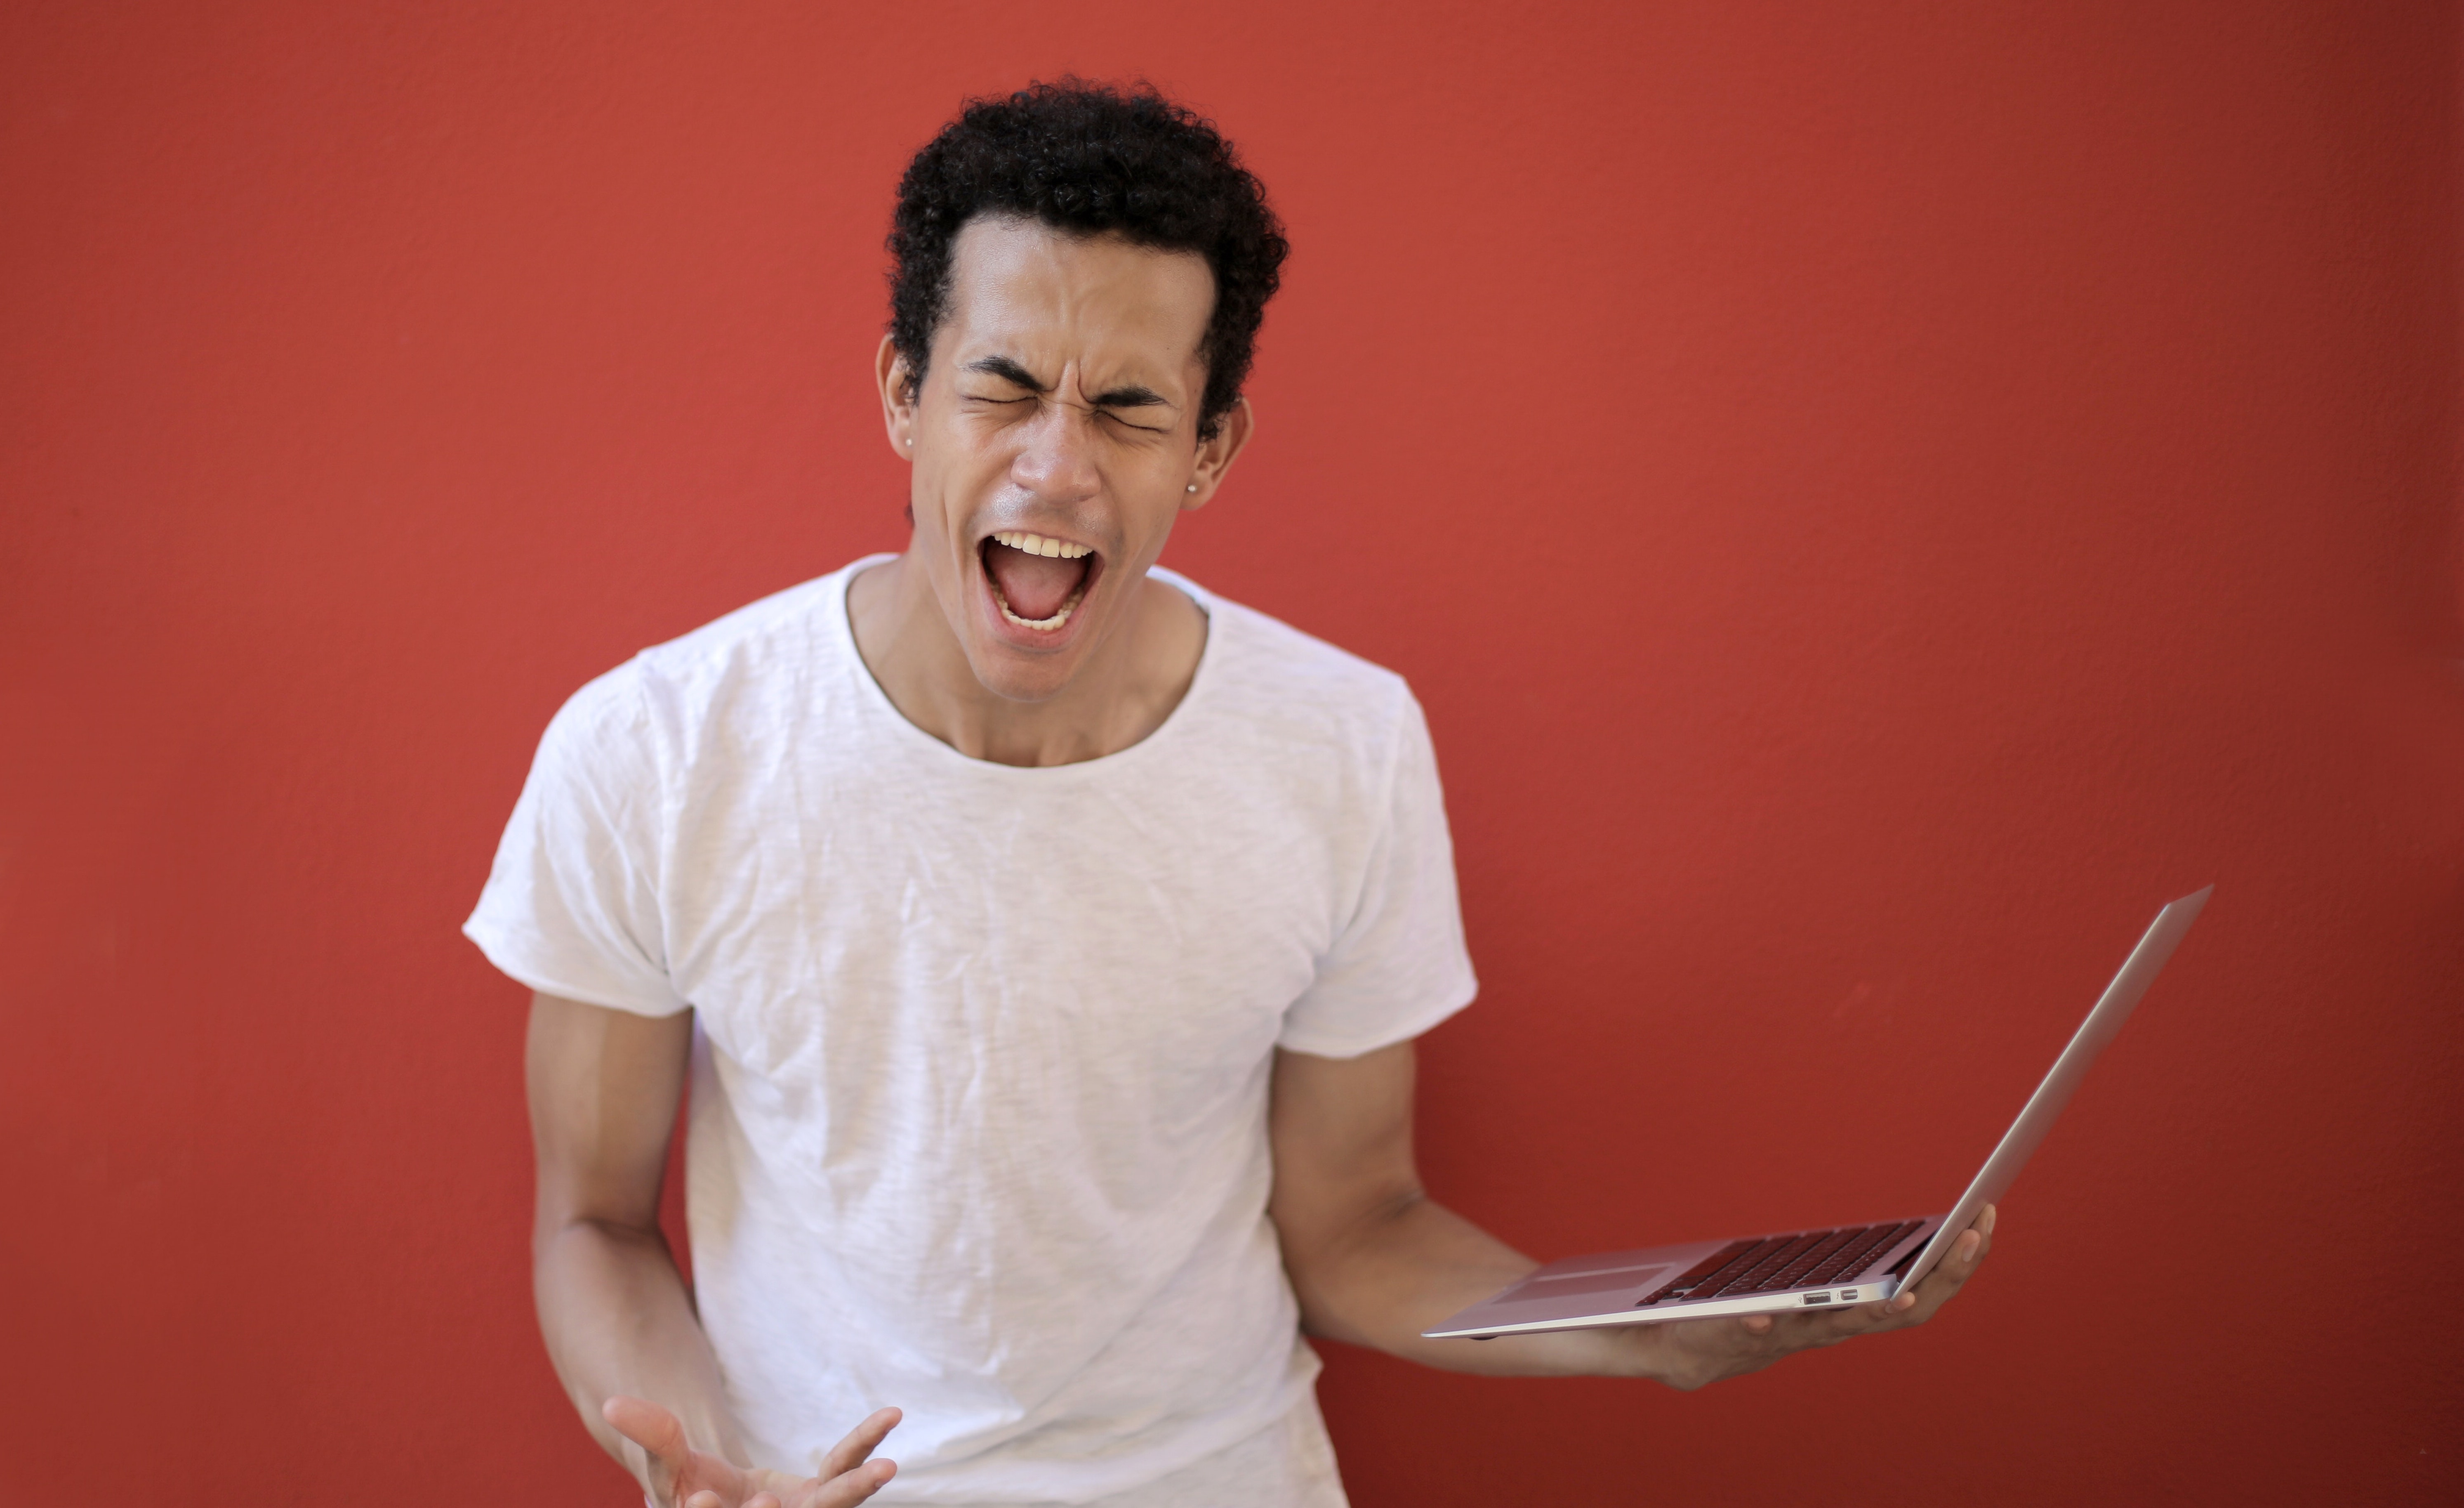 Man screaming while holding laptop